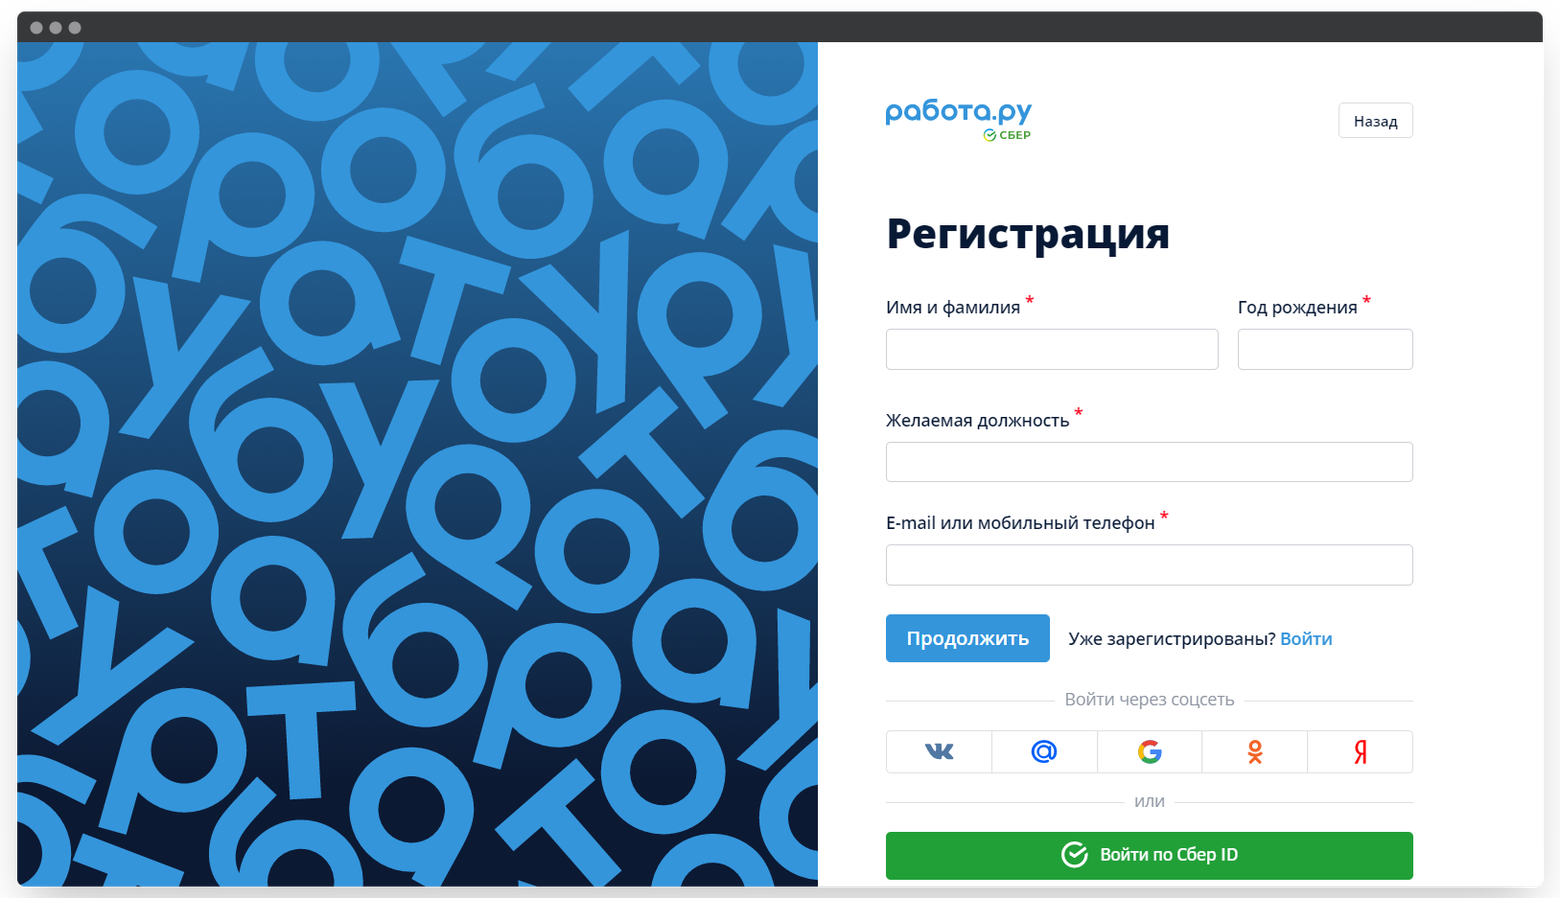 Как искать работу на Работе.ру, если вы пенсионер